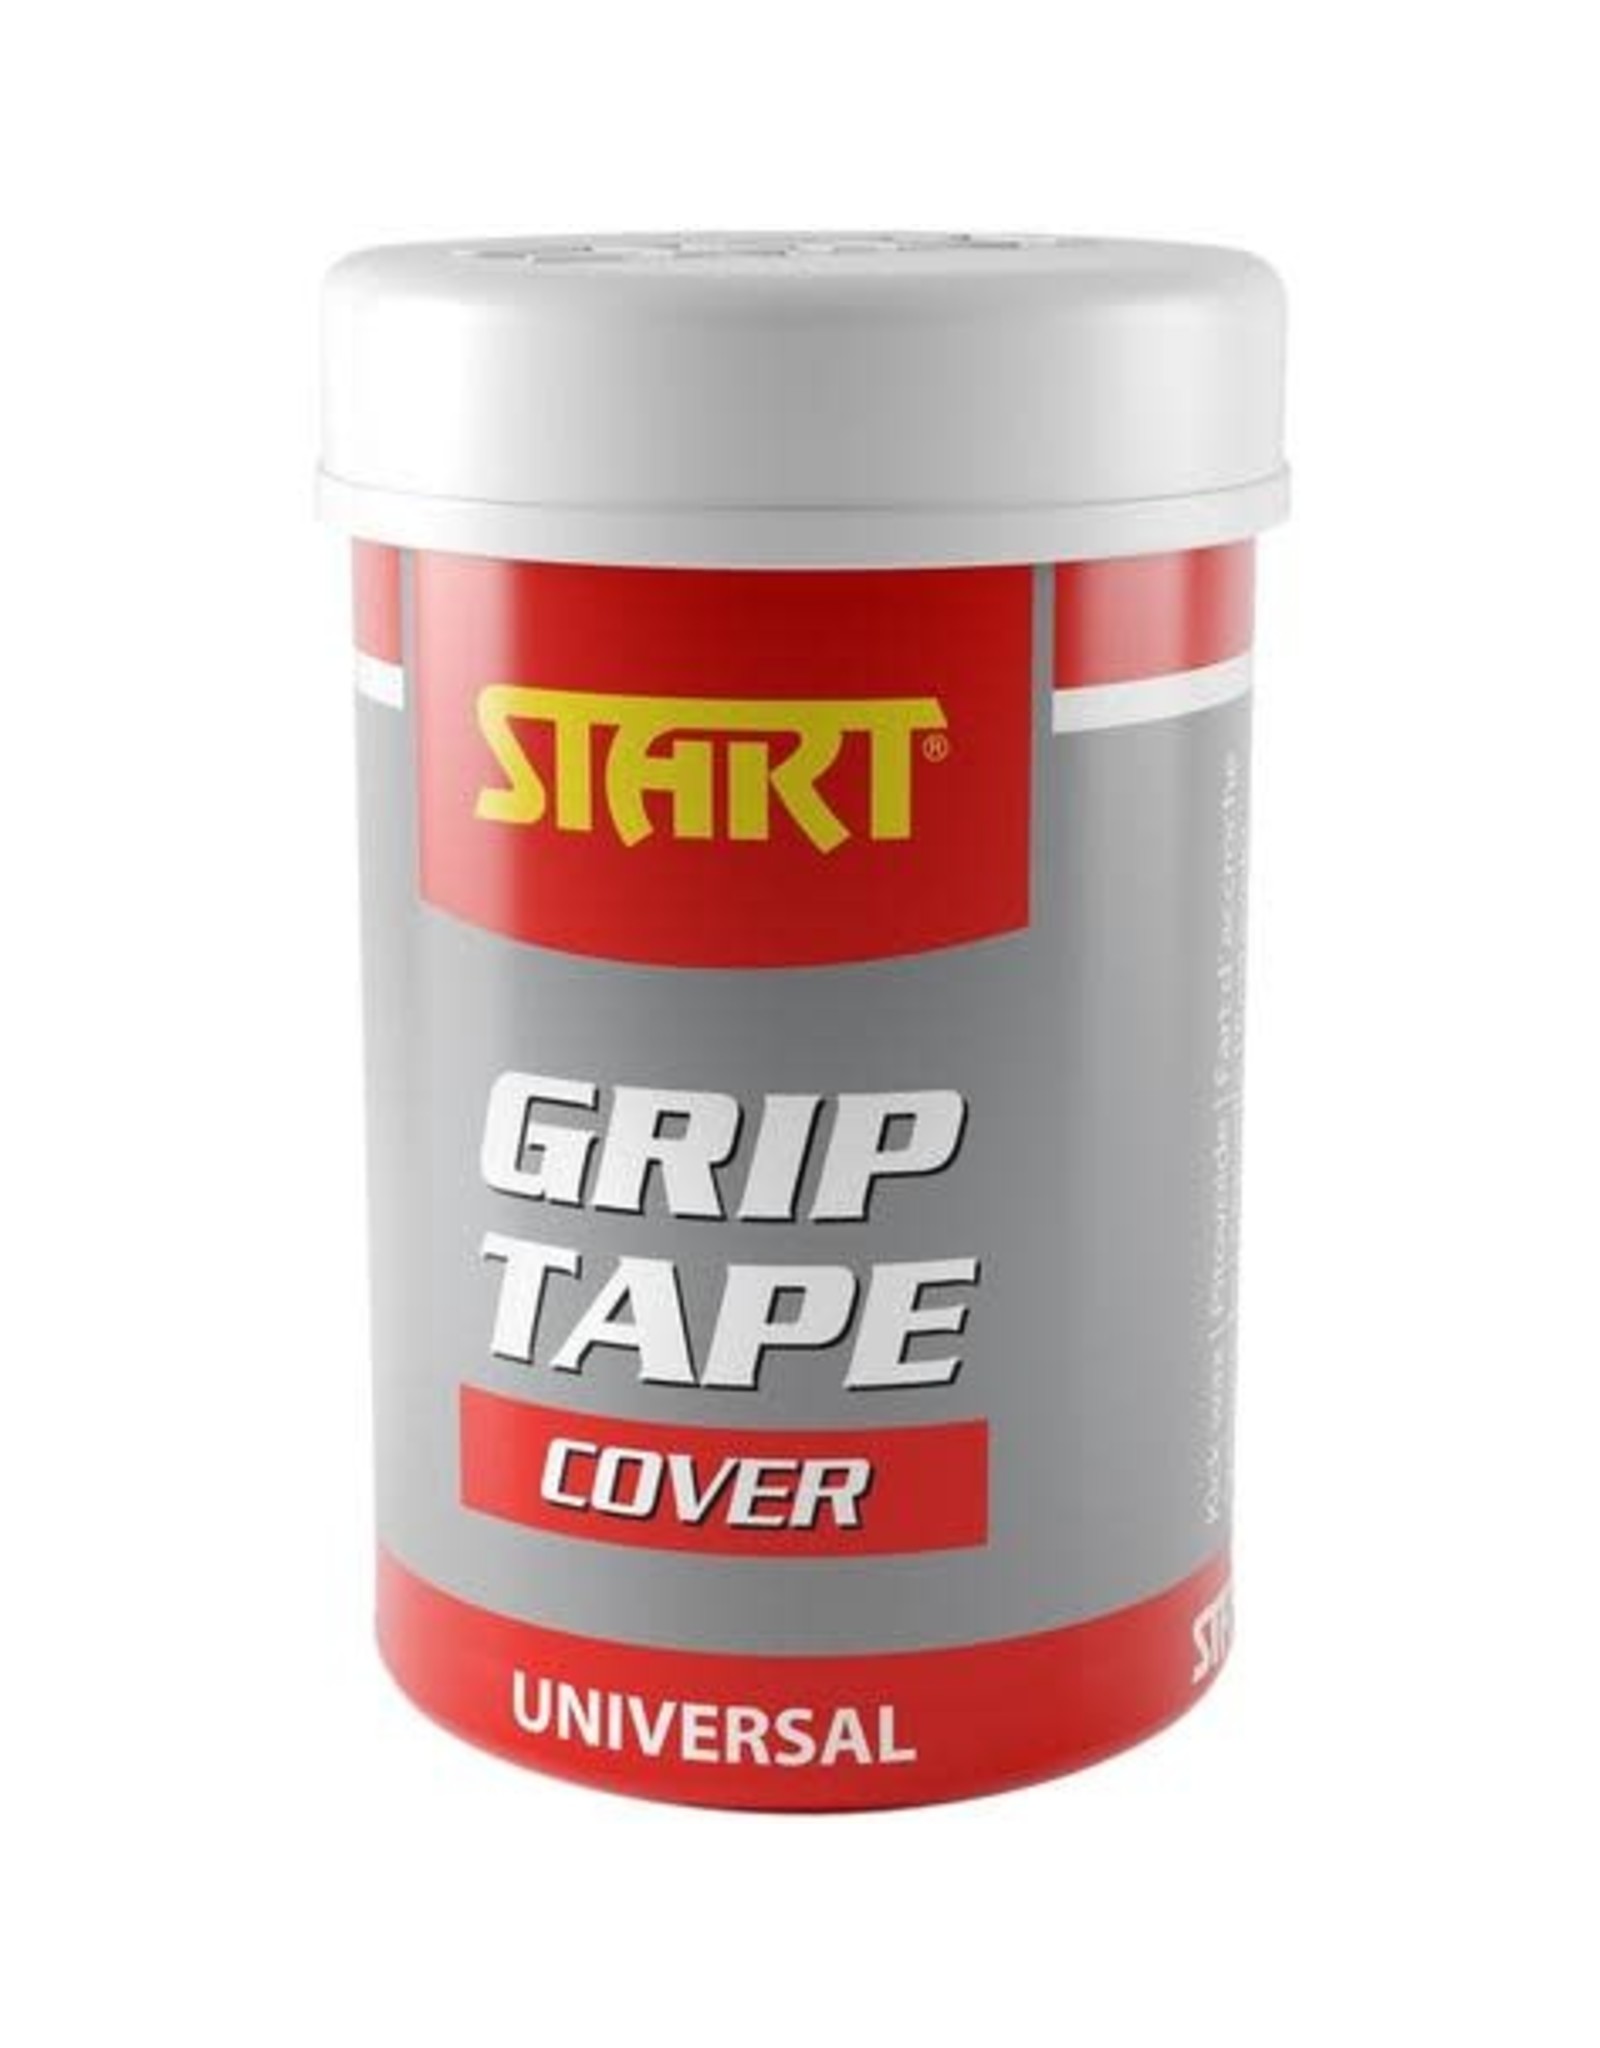 Start Start Grip Tape Cover